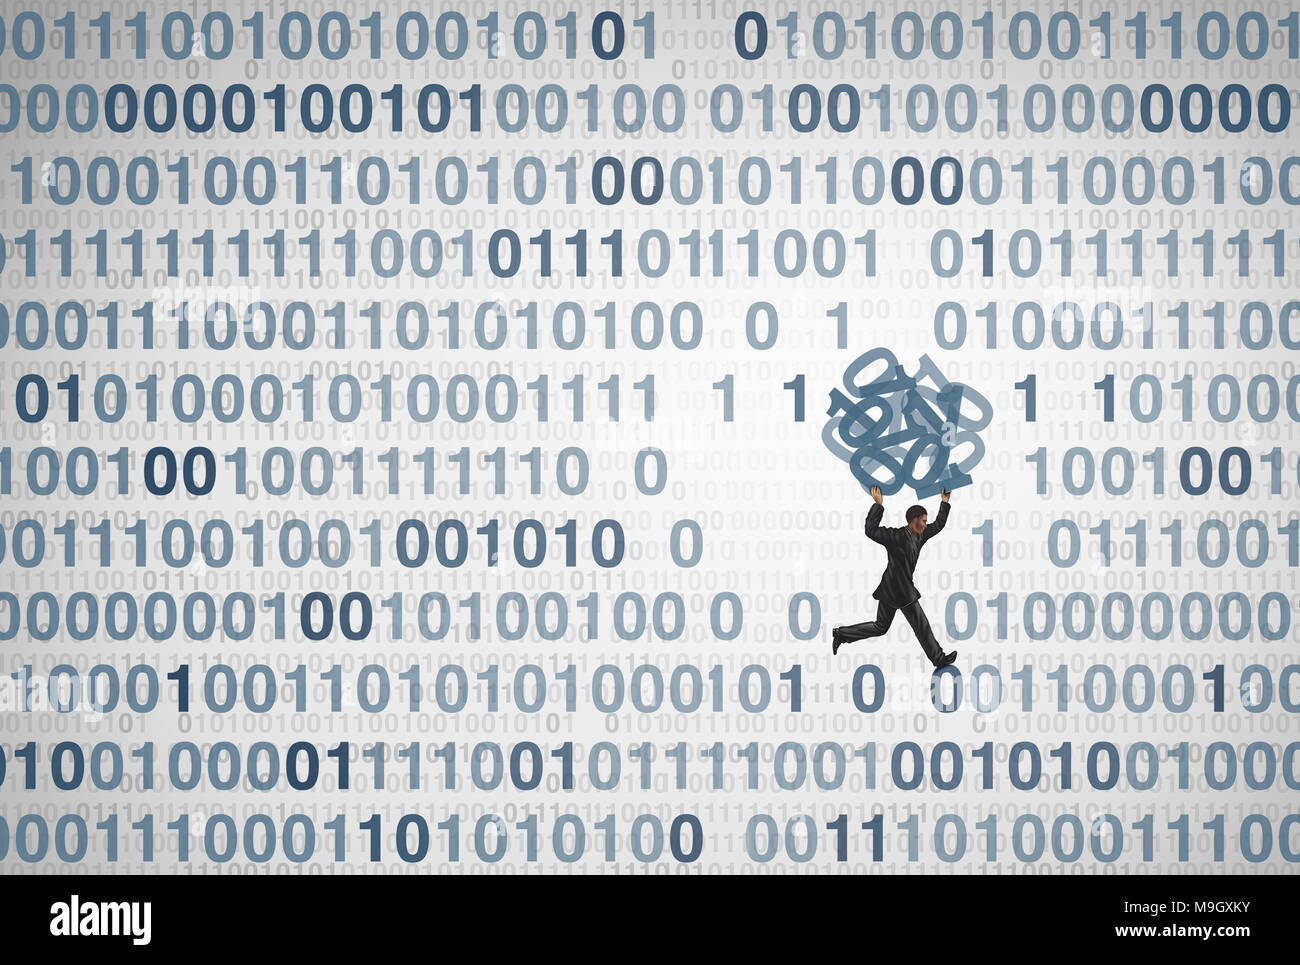 Datenpannen und private persönliche Informationen Diebstahl als Technologie Sicherheitskonzept als digitale Dieb Diebstahl code Als computing Risiko Idee. Stockfoto